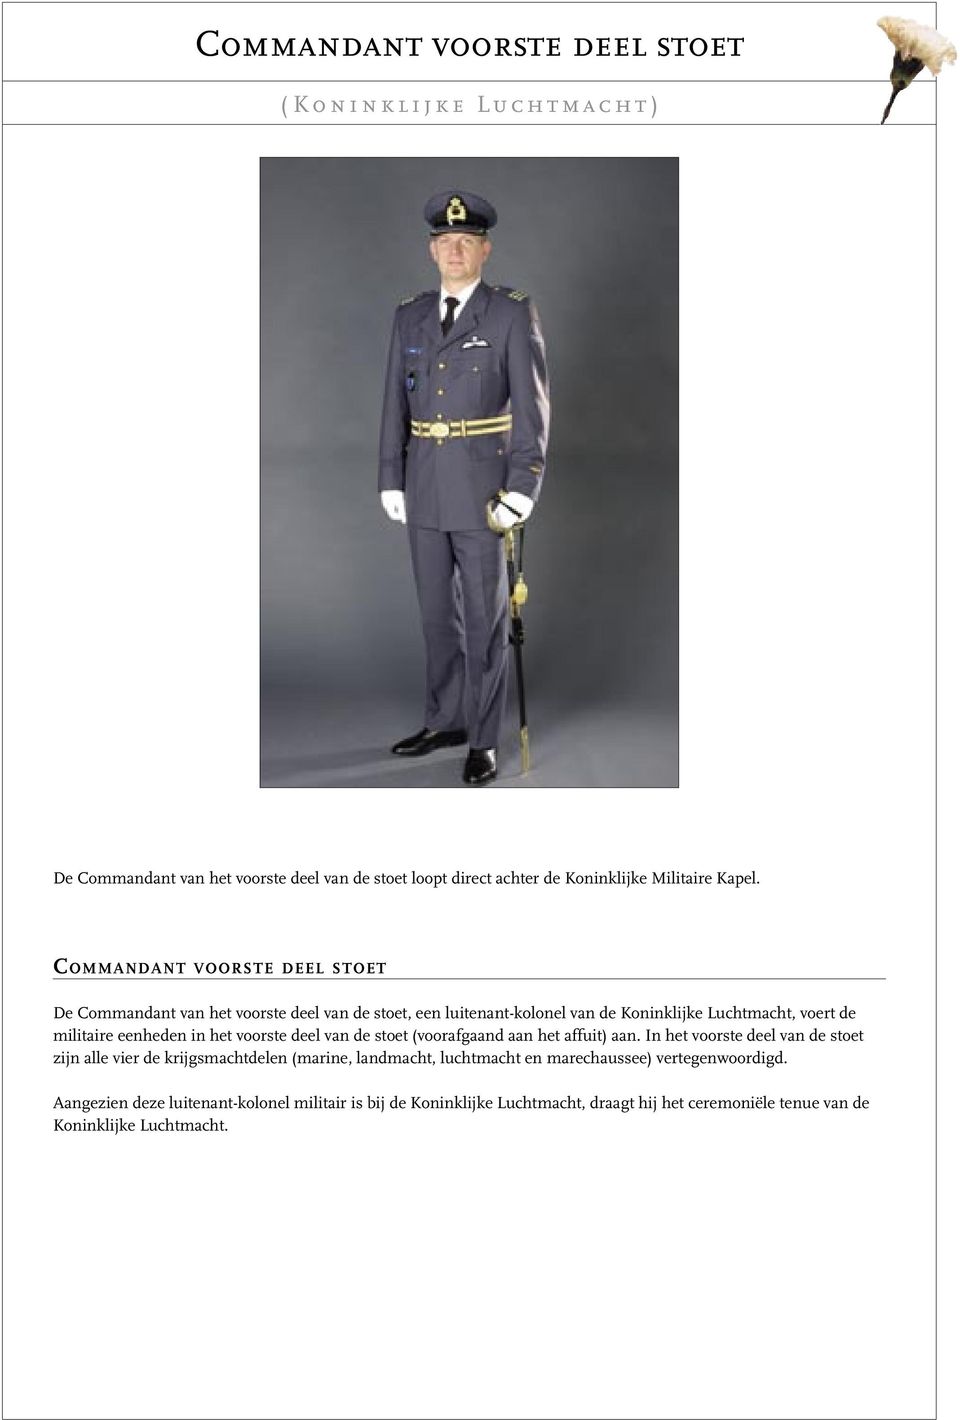 COMMANDANT VOORSTE DEEL STOET De Commandant van het voorste deel van de stoet, een luitenant-kolonel van de Koninklijke Luchtmacht, voert de militaire eenheden in het